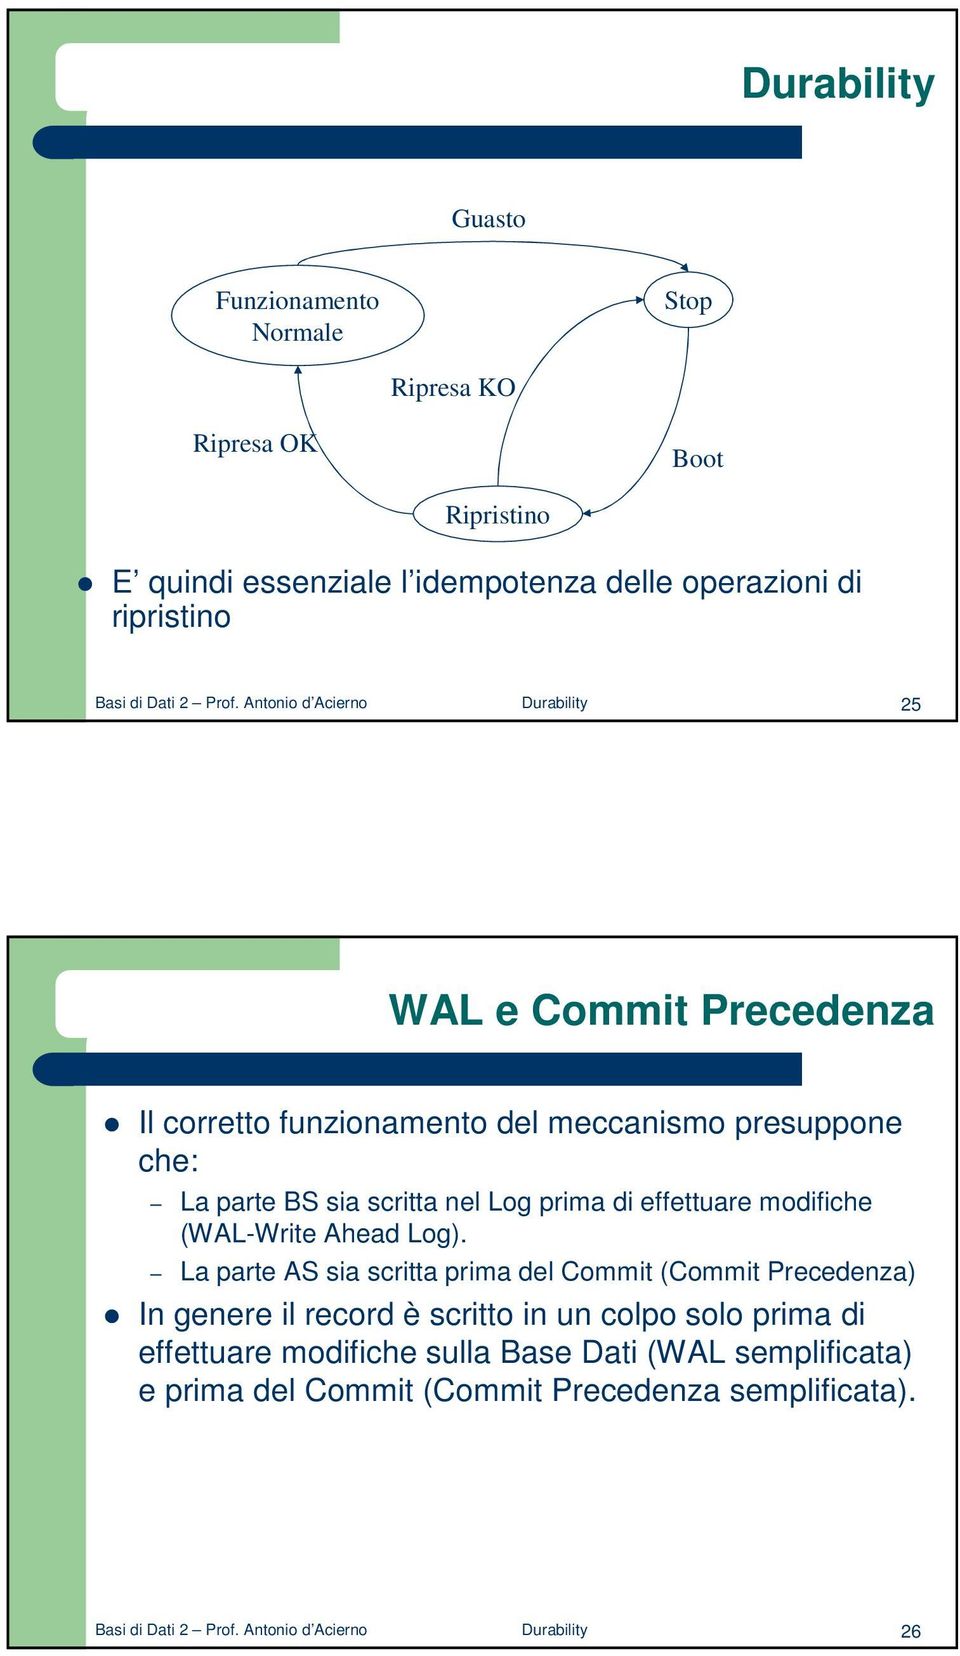 Antonio d Acierno Durability 25 WAL e Commit Precedenza Il corretto funzionamento del meccanismo presuppone che: La parte BS sia scritta nel Log prima di